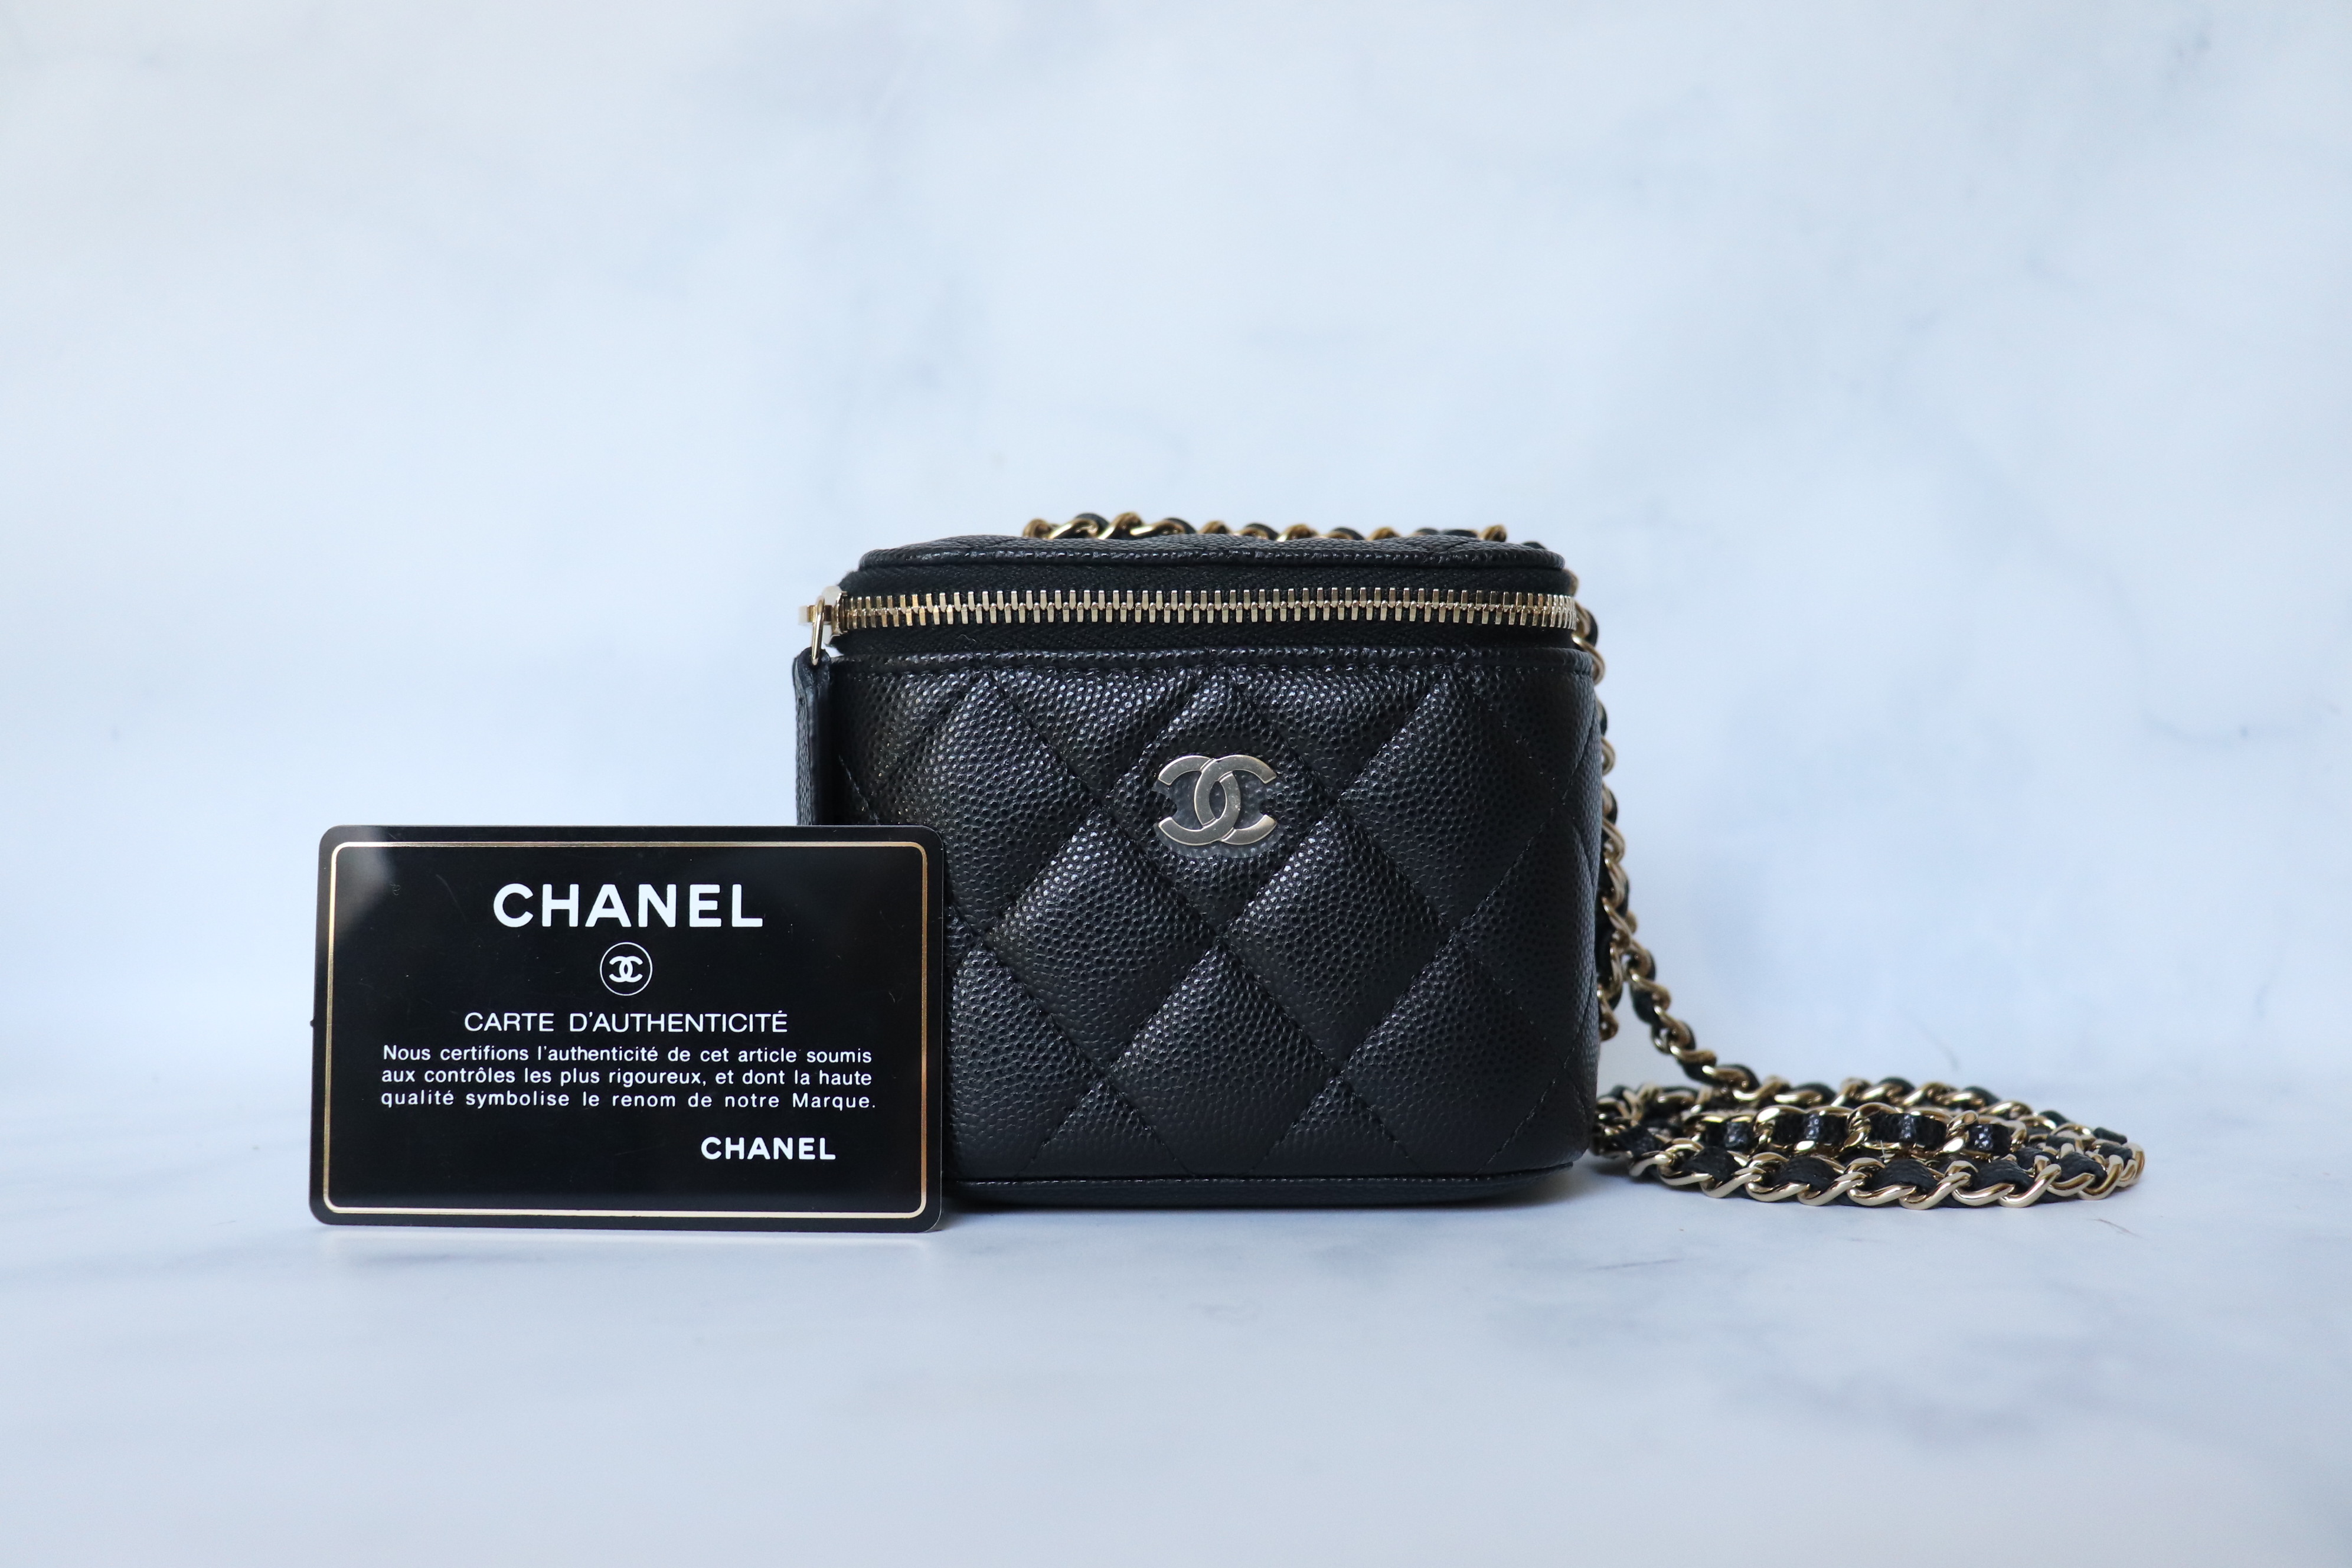 Chanel Matelasse Single Chain Women's Caviar Leather Shoulder Bag Black  Auction